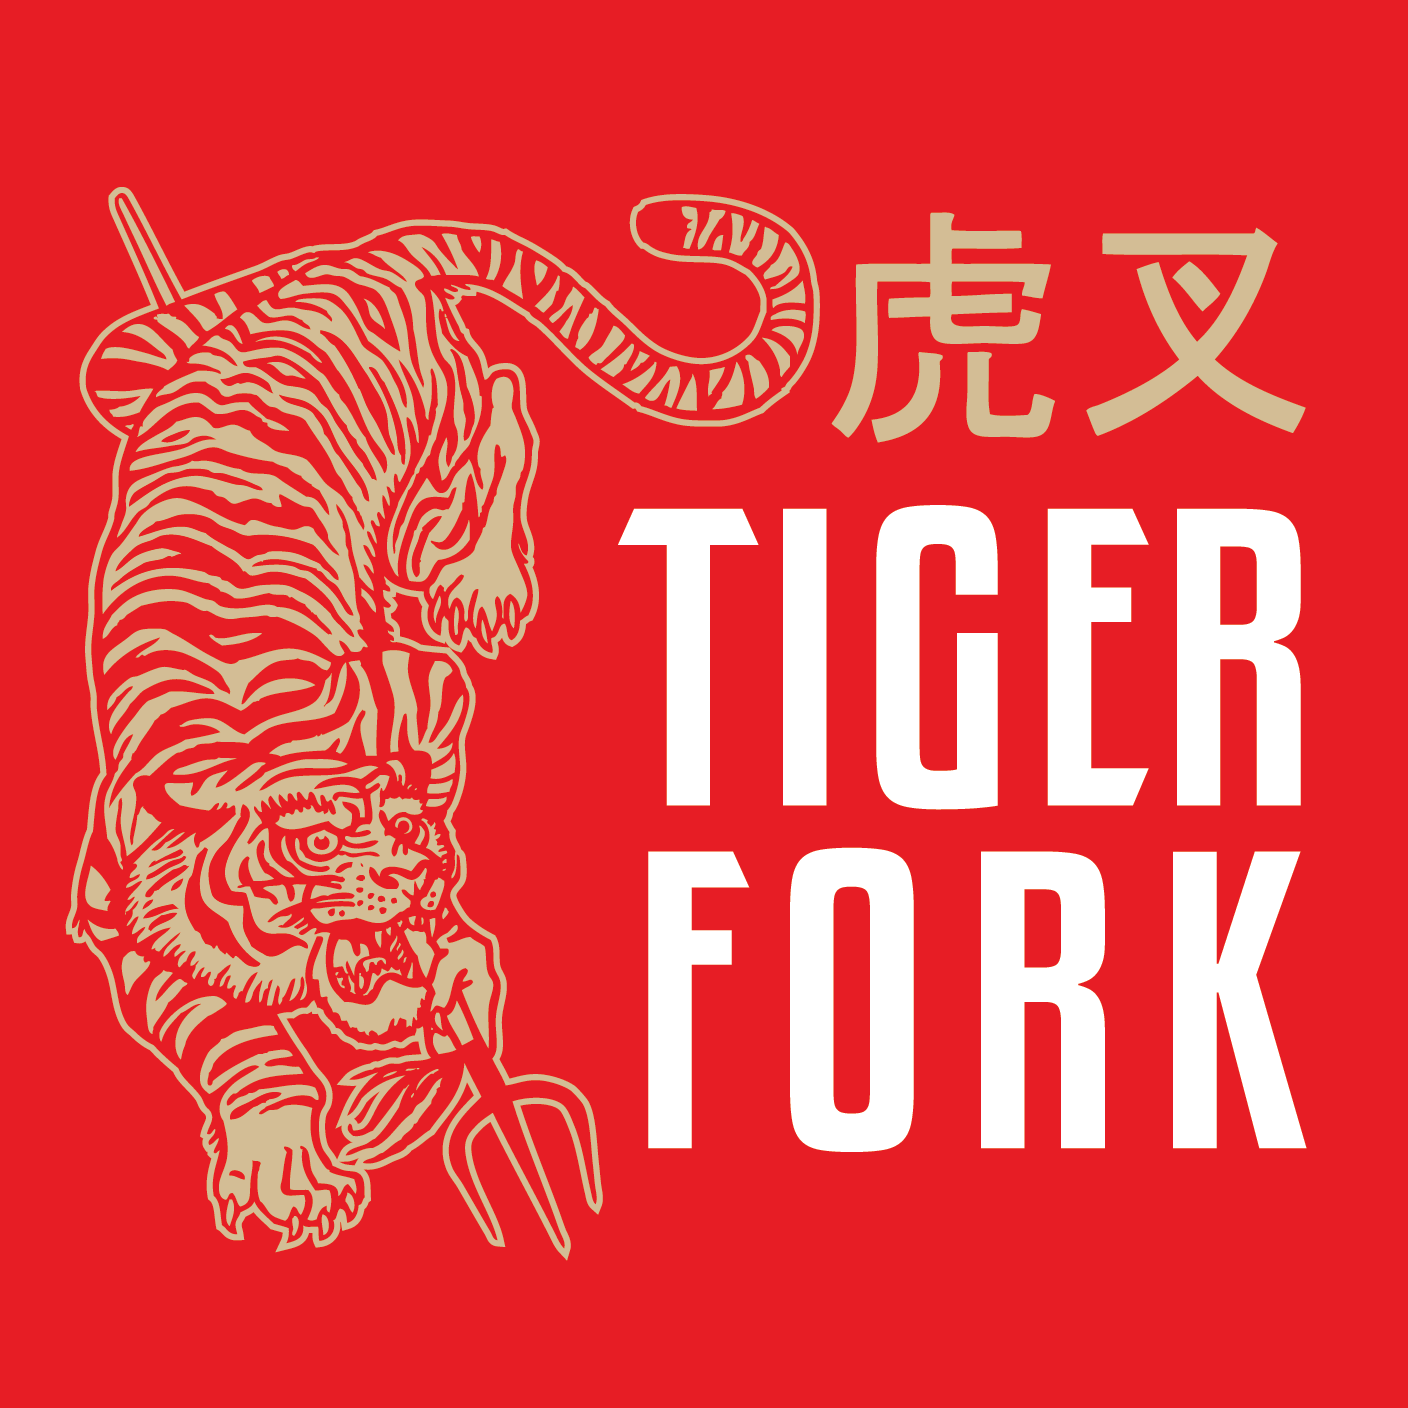 Tiger Fork Logo